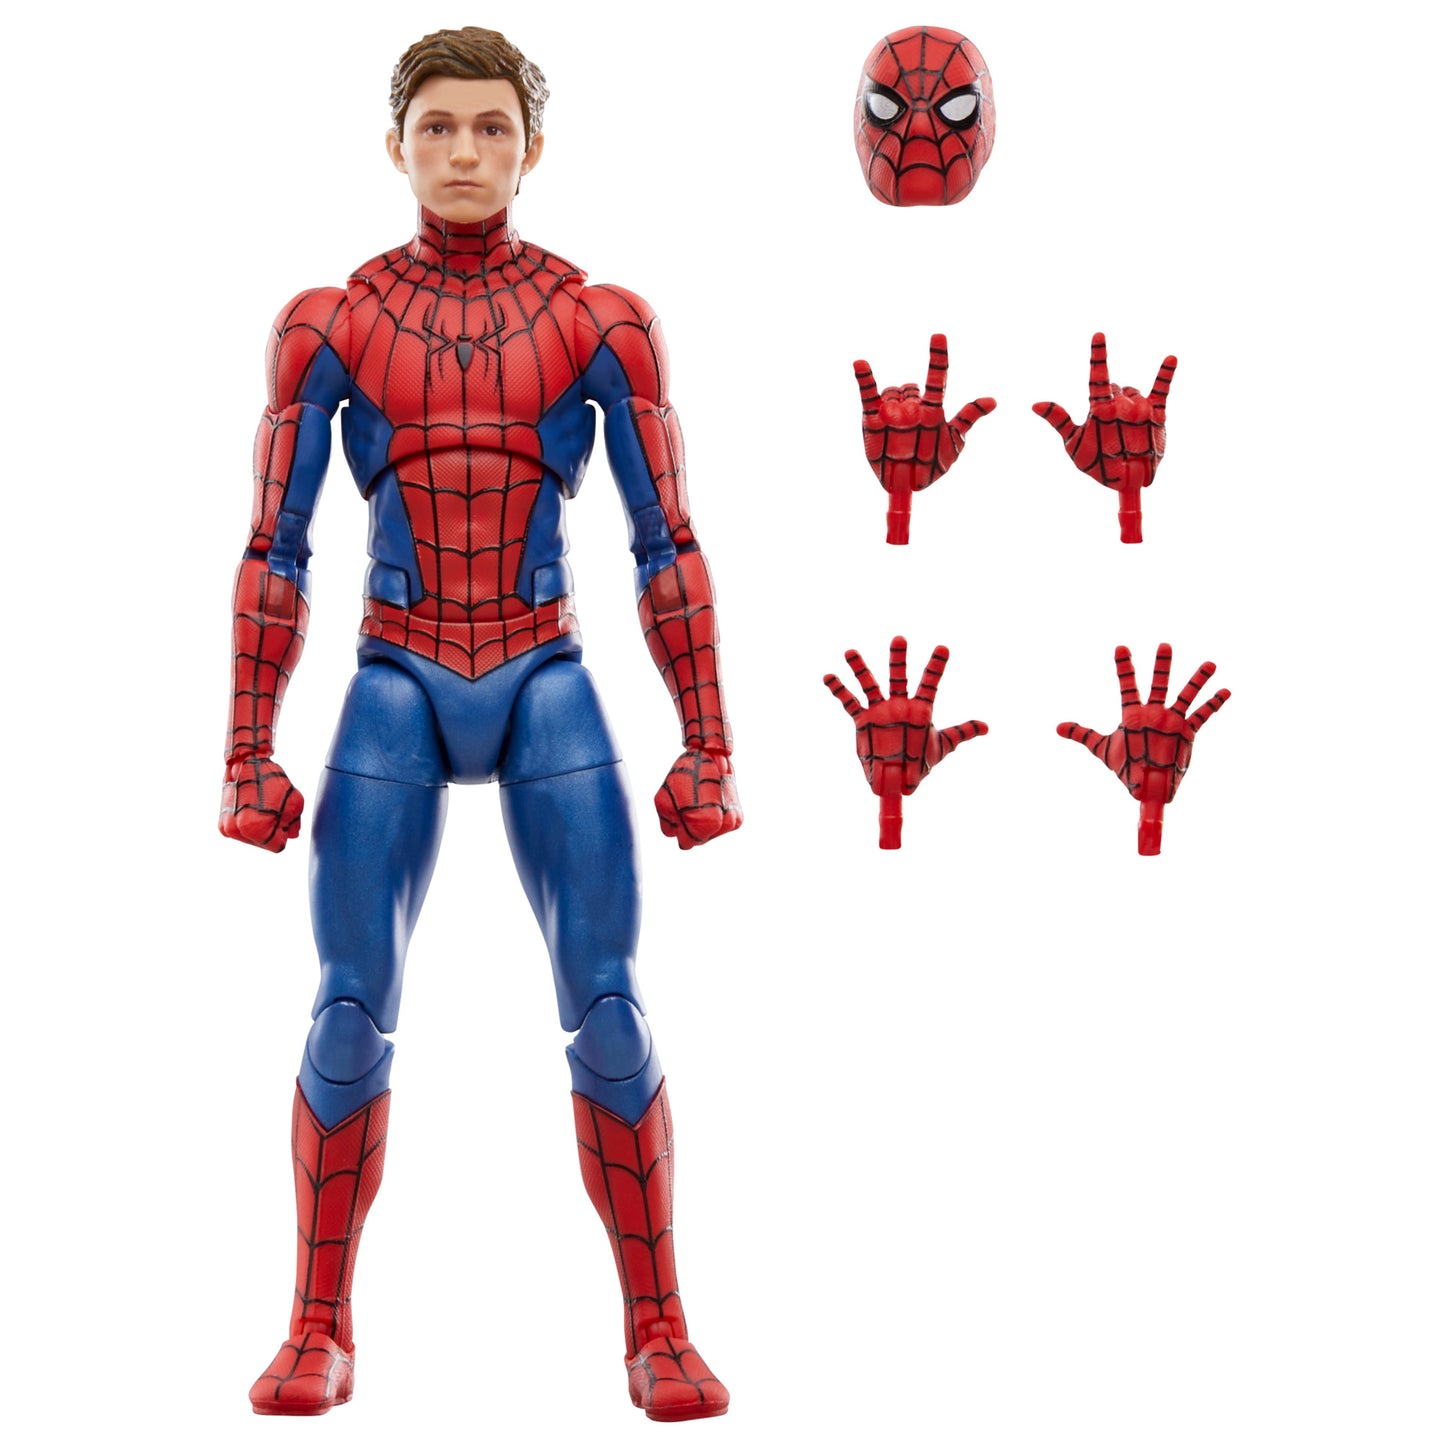 Marvel Legends Series Spider-Man, 6 Marvel Legends Action Figure